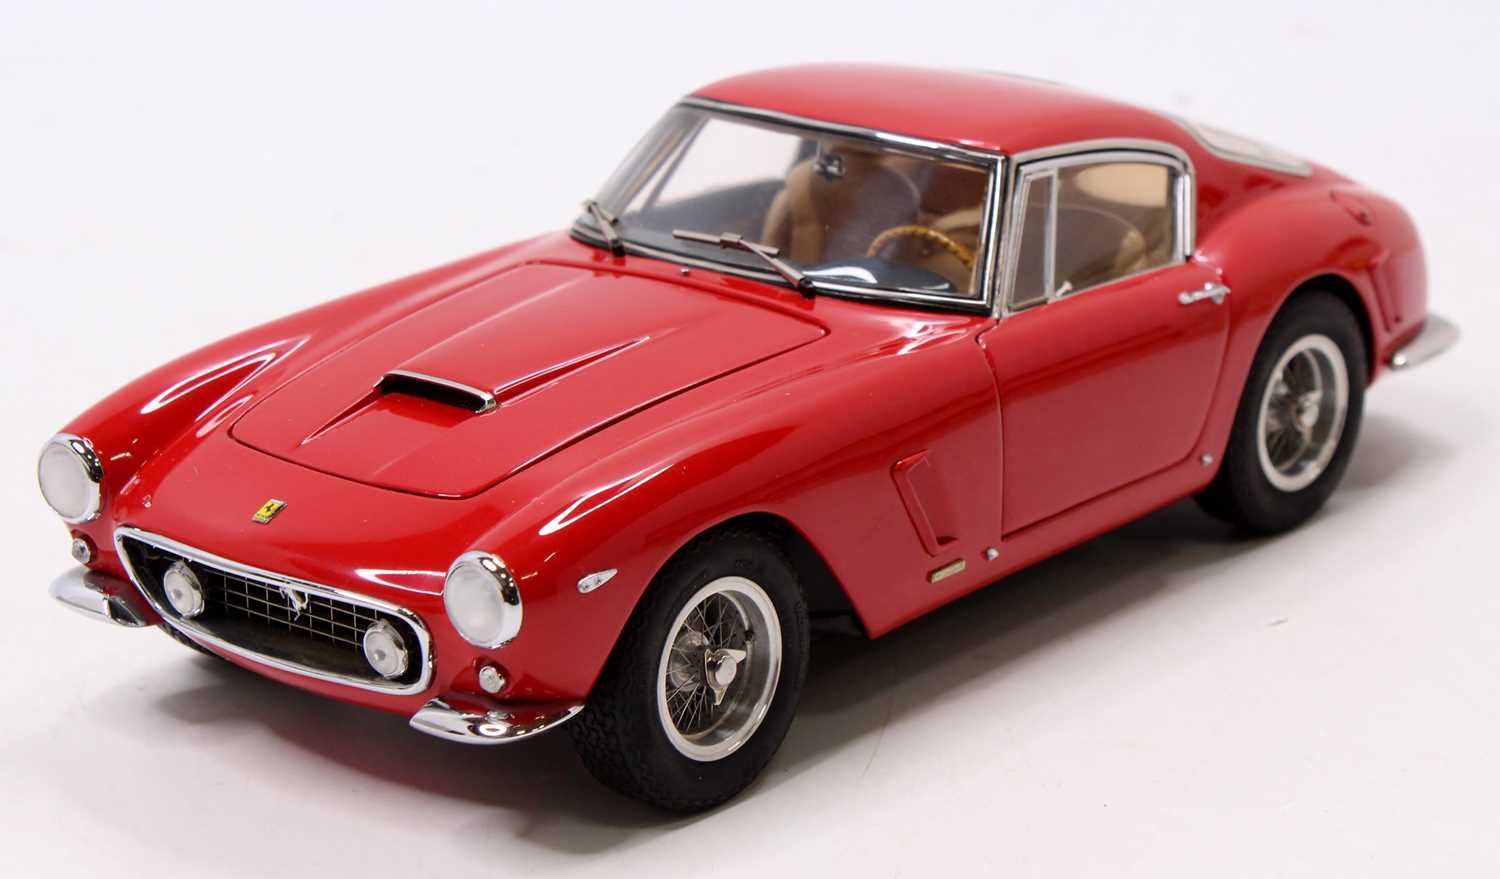 A CMC Exclusive Models No. M-46 1/18 scale model 1961 Ferrari 250 GT Berlinetta Passo Corto (SWB), - Image 3 of 3